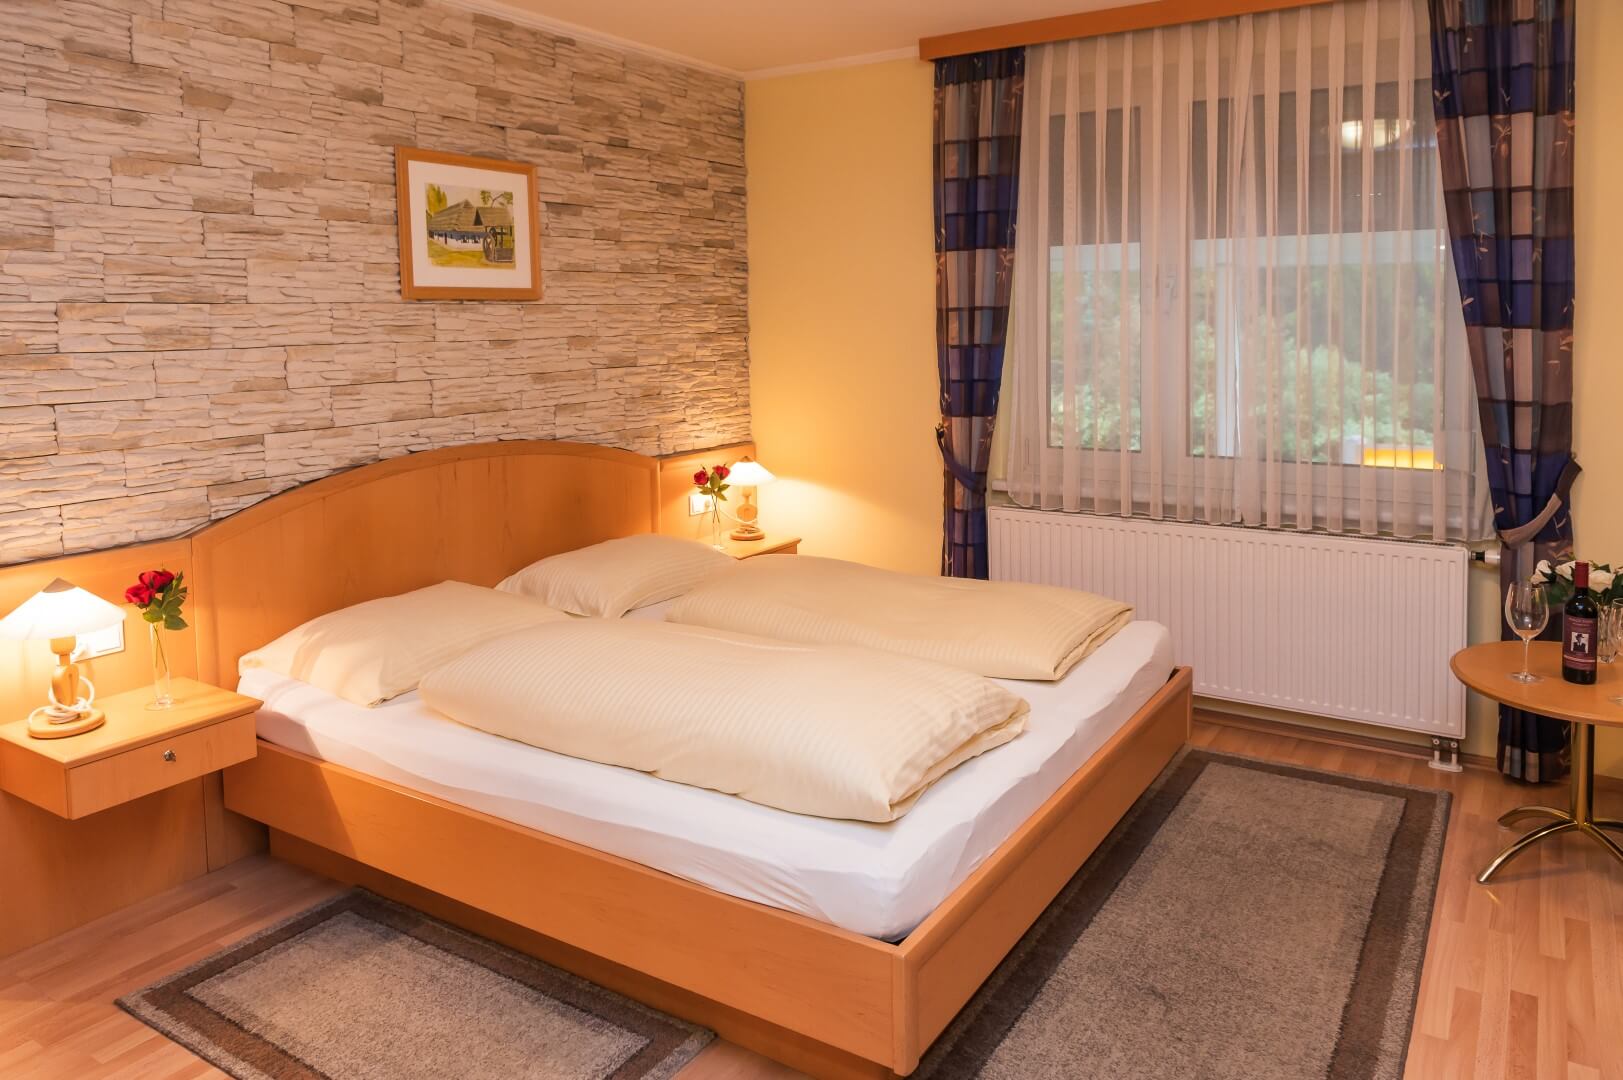 Gemütlich eingerichtetes Zimmer mit Doppelbett, Steinwand, Nachttischen und Fensterblick ins Grüne im Gasthaus Treiber.